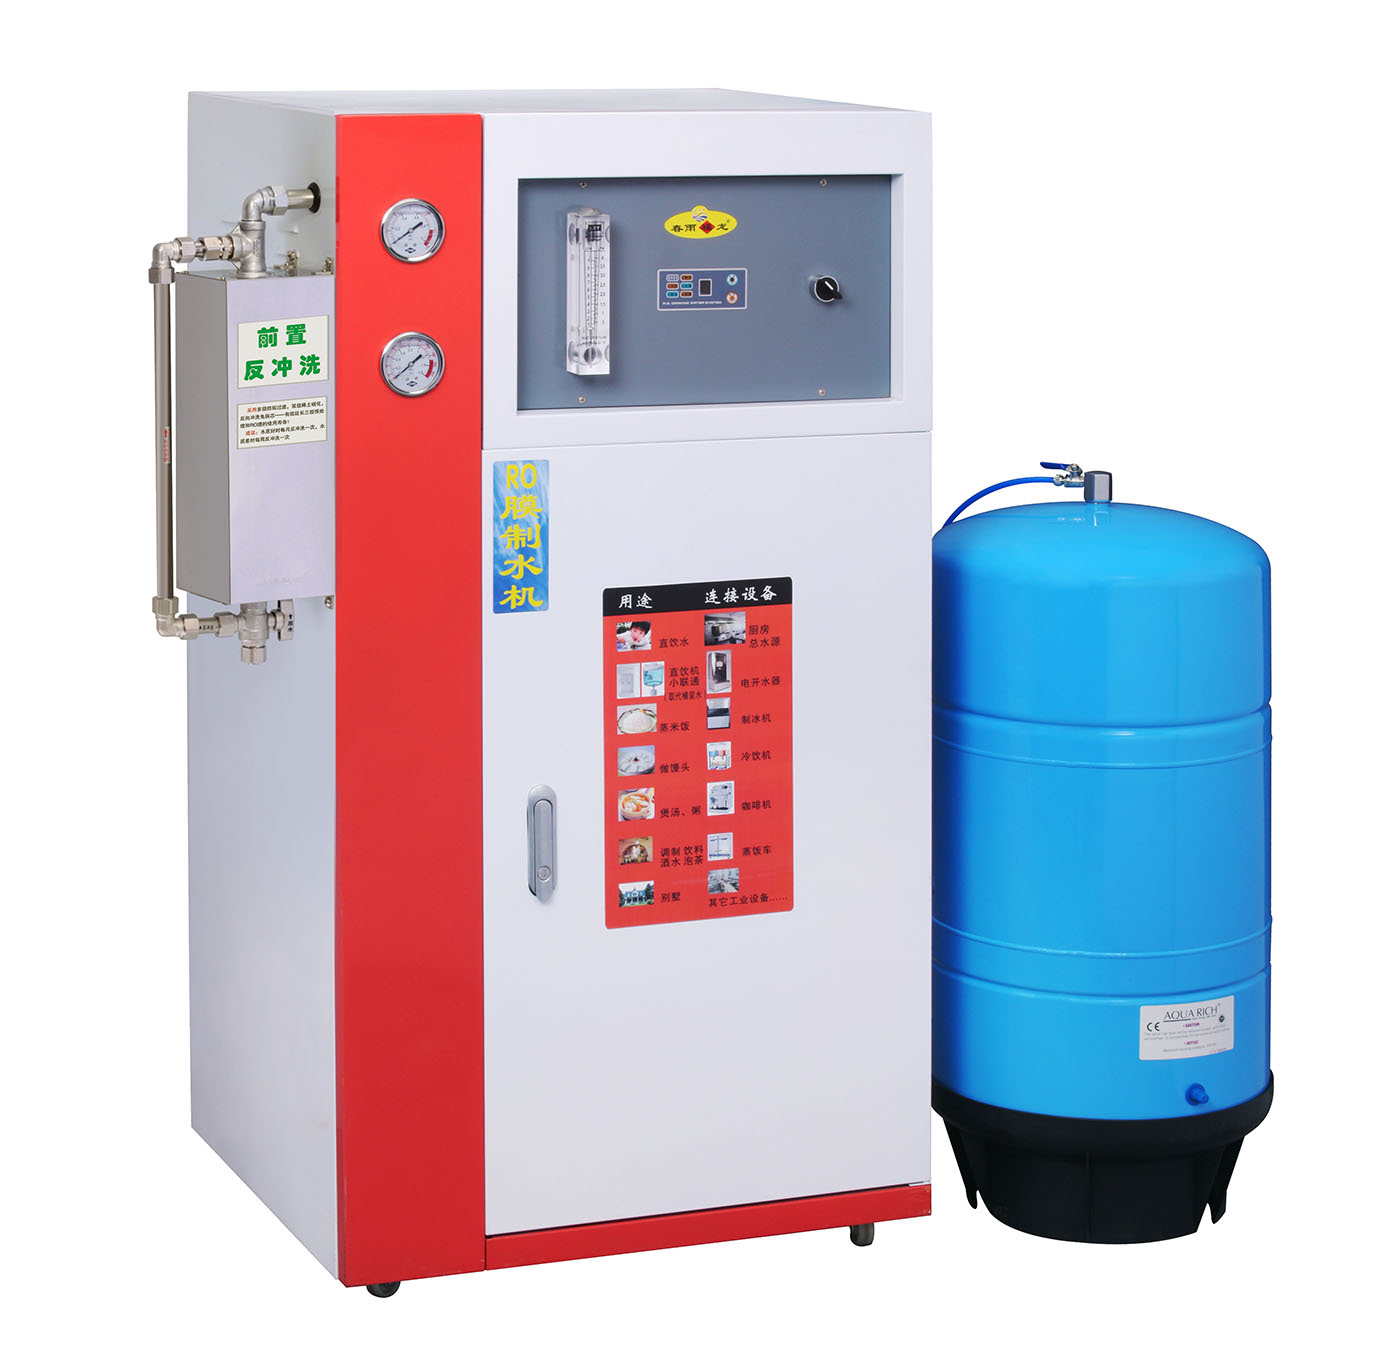 春雨福龙CY-B200W型商用RO膜反渗透纯水机(直饮机) 200加仑/天 标配11加仑储水罐